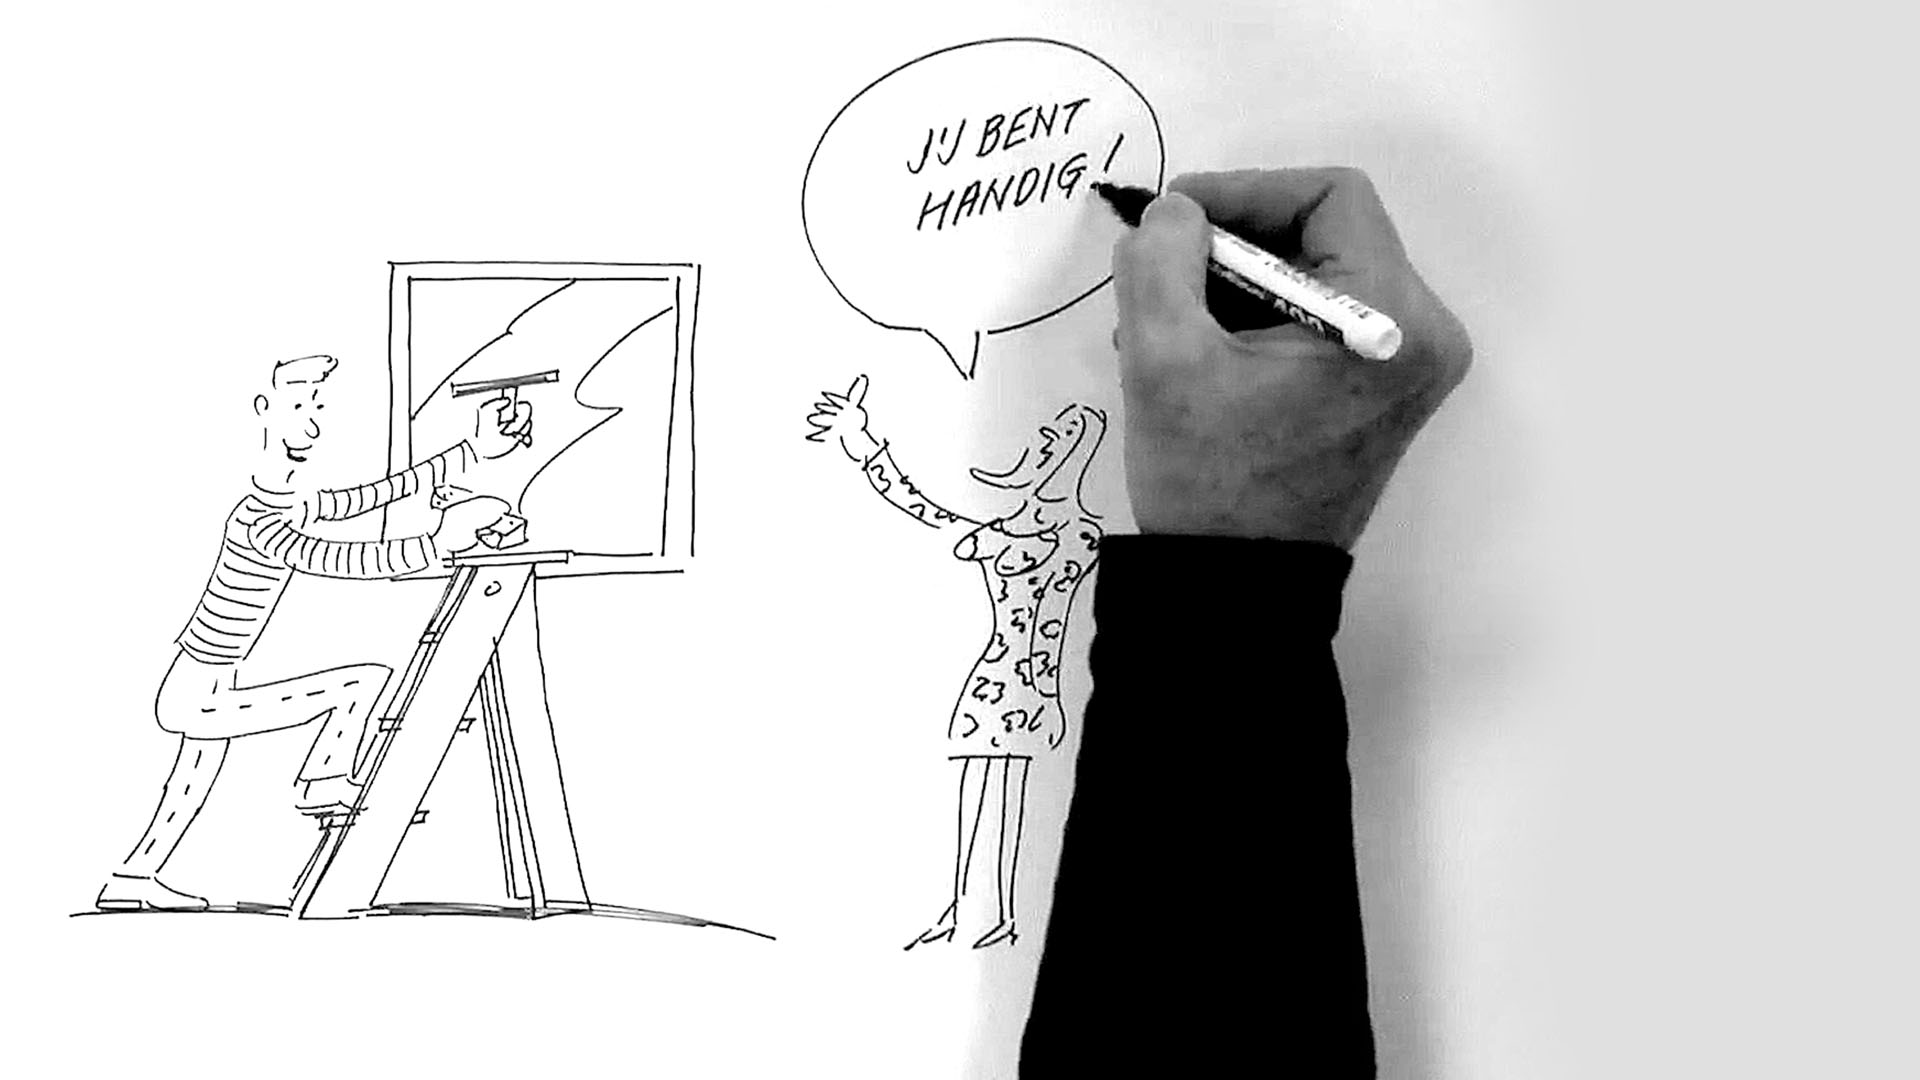 Spiegel crossmedia communicatie - ORO whiteboard animatie supportgericht werken header